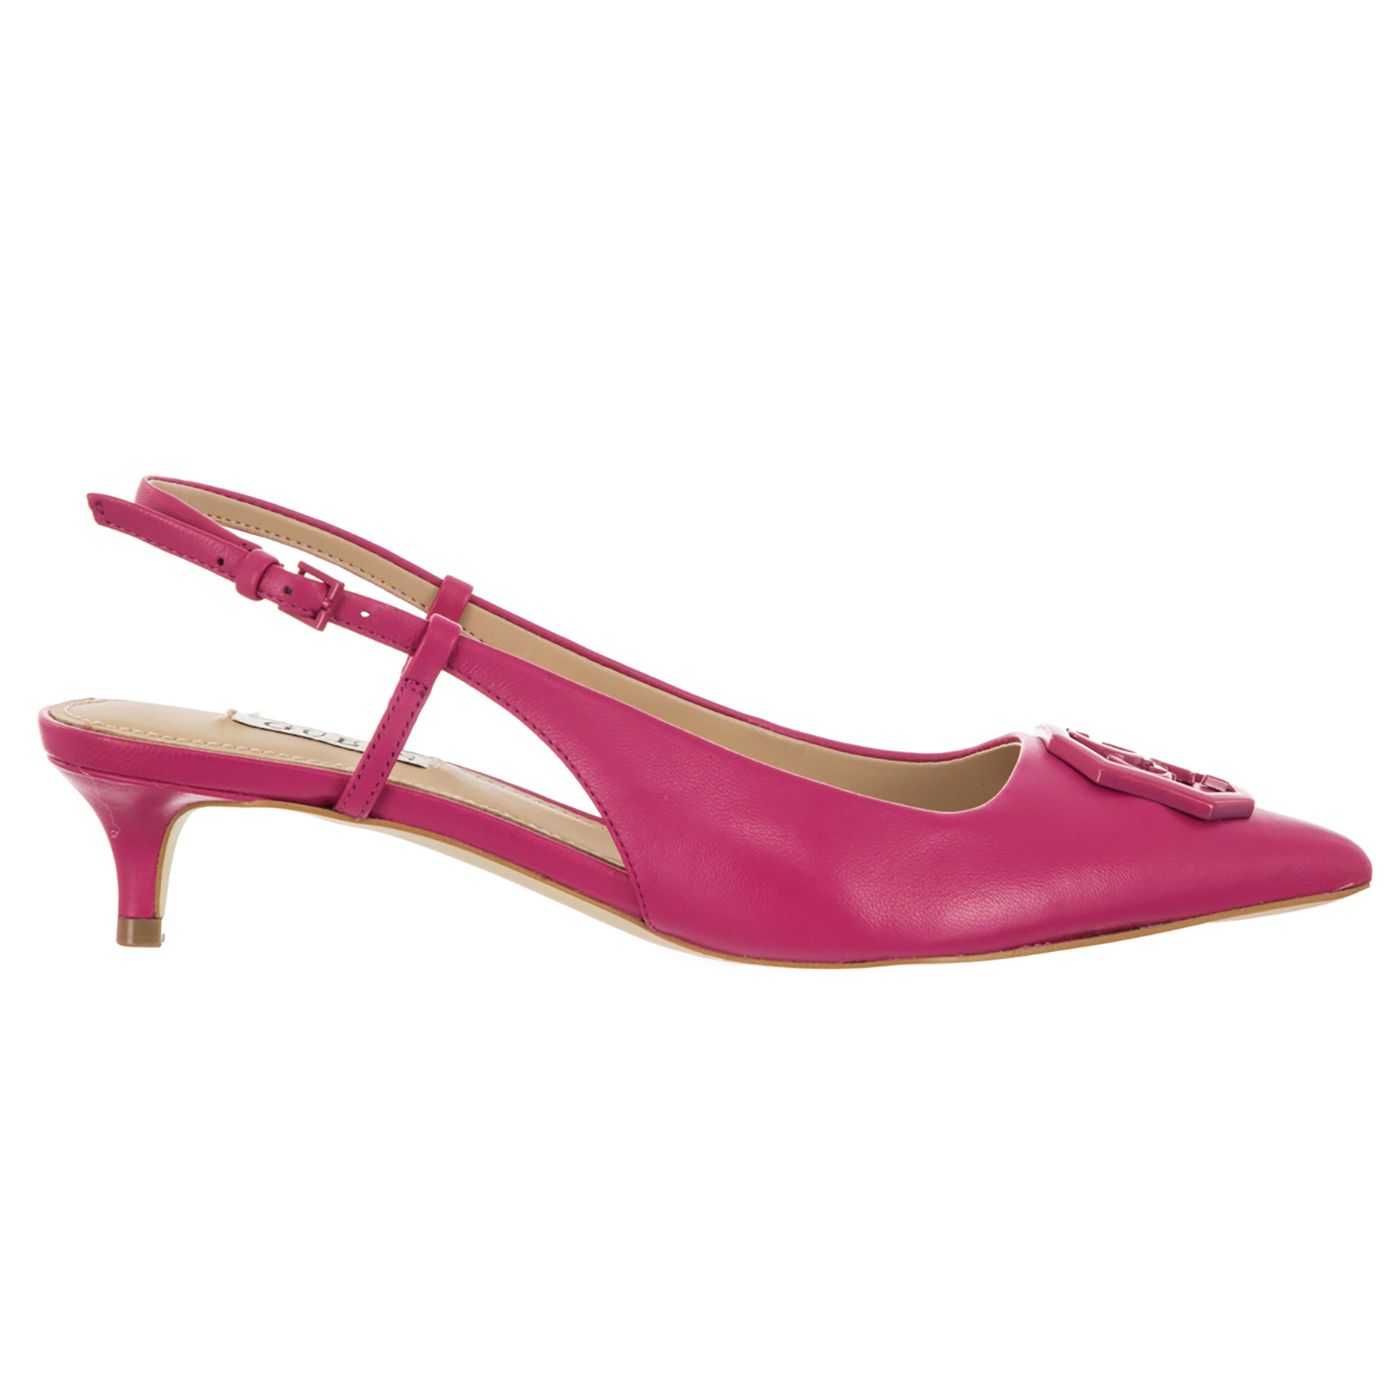 Guess FL5JESLEA05-PINK-36 Chique en vrouwelijk, verliefd worden op de kleur van deze schoenen, perfect voor lente en zomer.